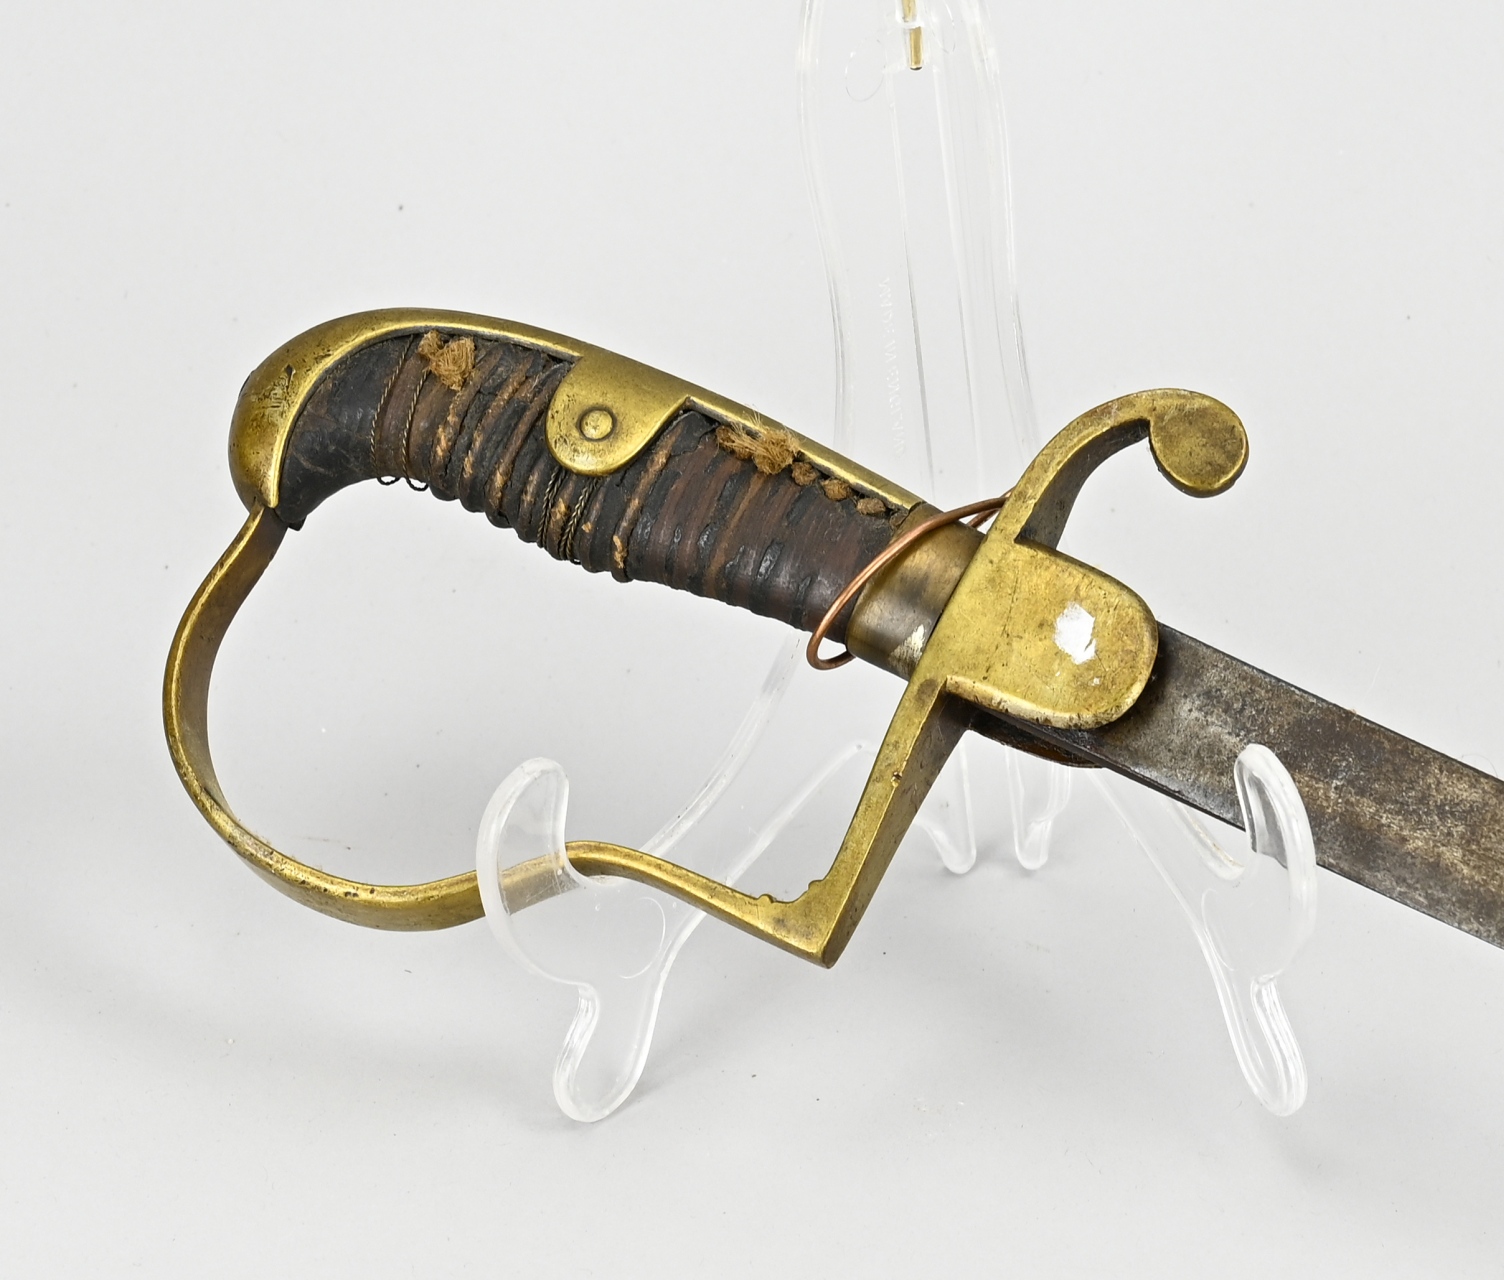 Antique sabre, L 94.5 cm. - Image 2 of 2